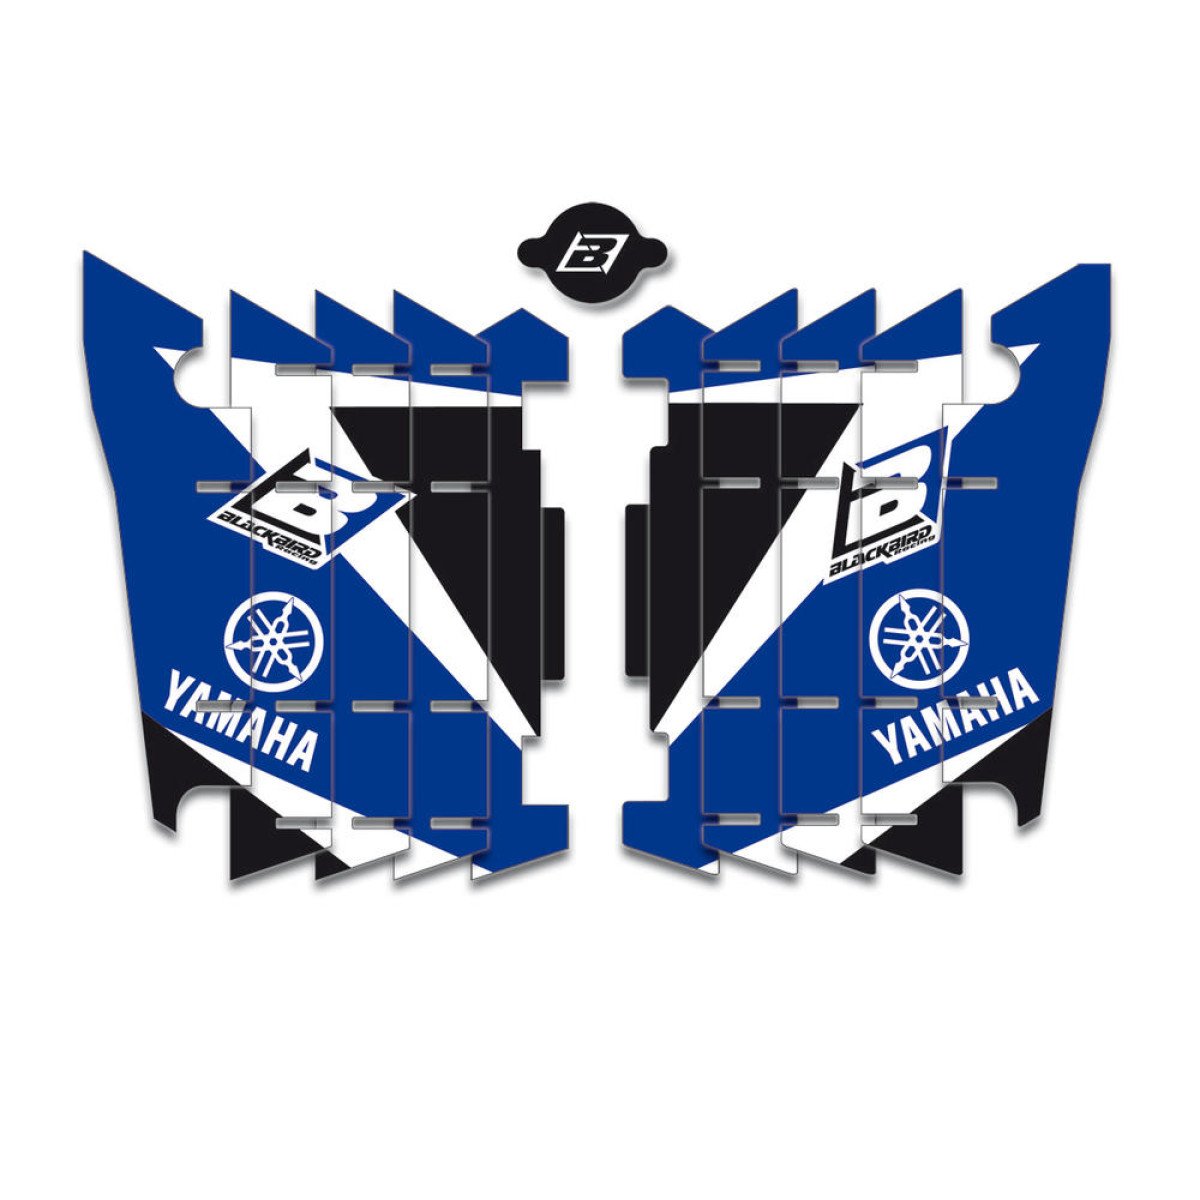 Blackbird Racing Autocollants pour Grille de Radiateur Dream 3 Yamaha YZF 450 10-13, Bleu/Noir/Blanc